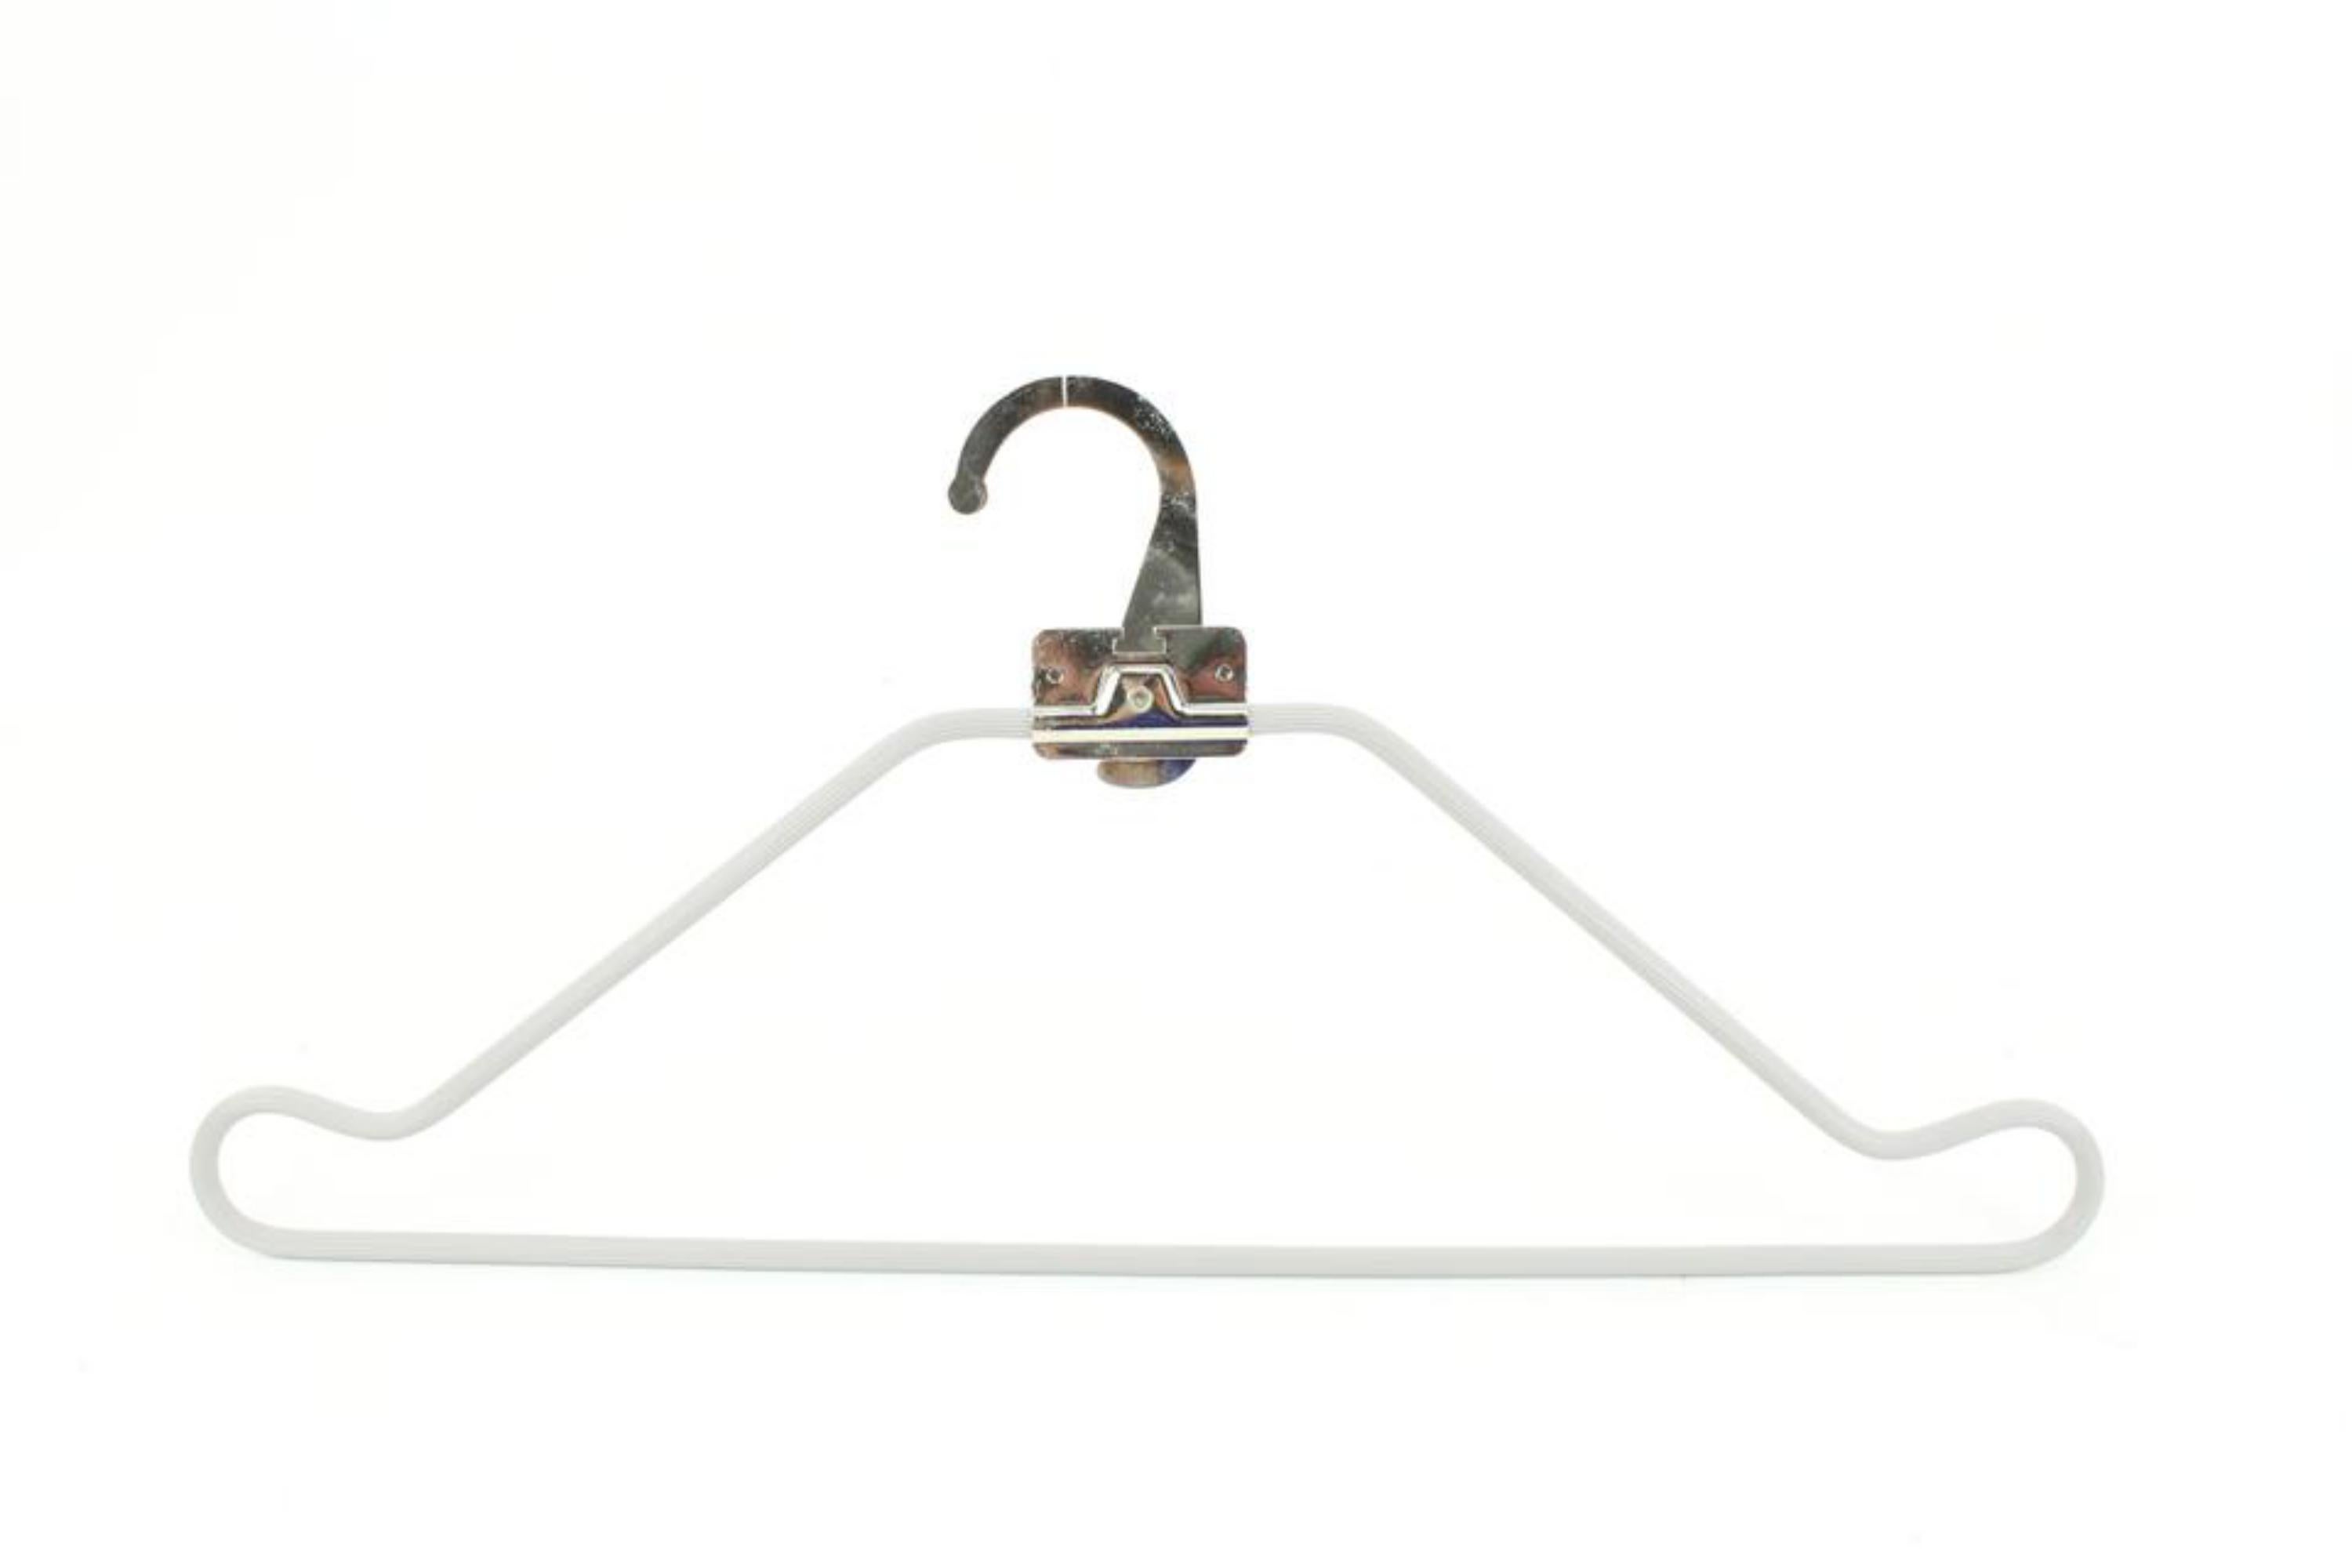 Louis Vuitton Grey x Silver Retractable Hanger 48lv53
Measurements: Length:  16.5